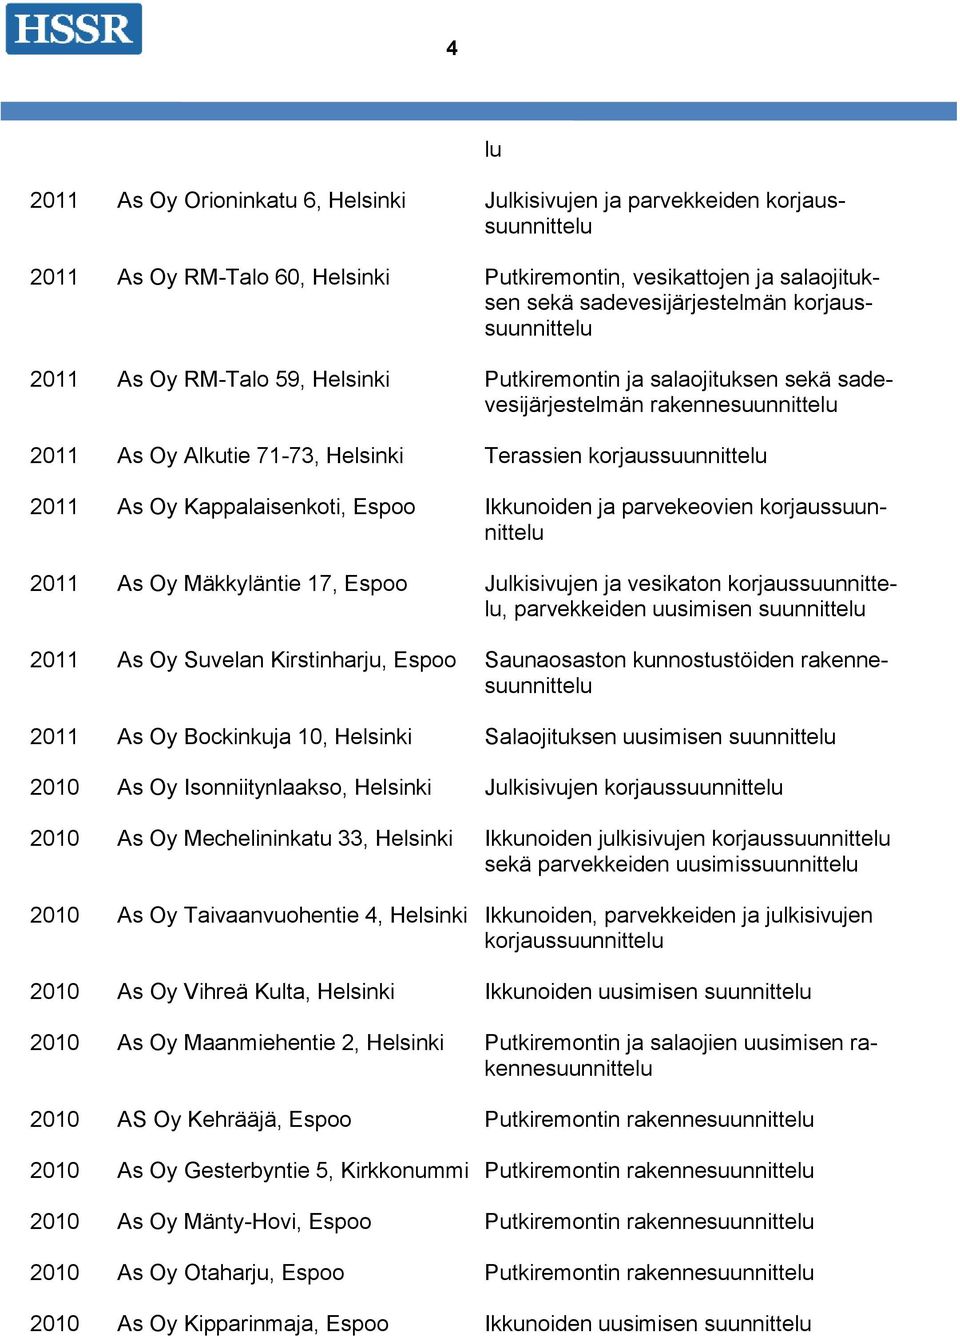 Oy Mäkkyläntie 17, Espoo Julkisivujen ja vesikaton, parvekkeiden uusimisen suunnittelu 2011 As Oy Suvelan Kirstinharju, Espoo Saunaosaston kunnostustöiden rakennesuunnittelu 2011 As Oy Bockinkuja 10,